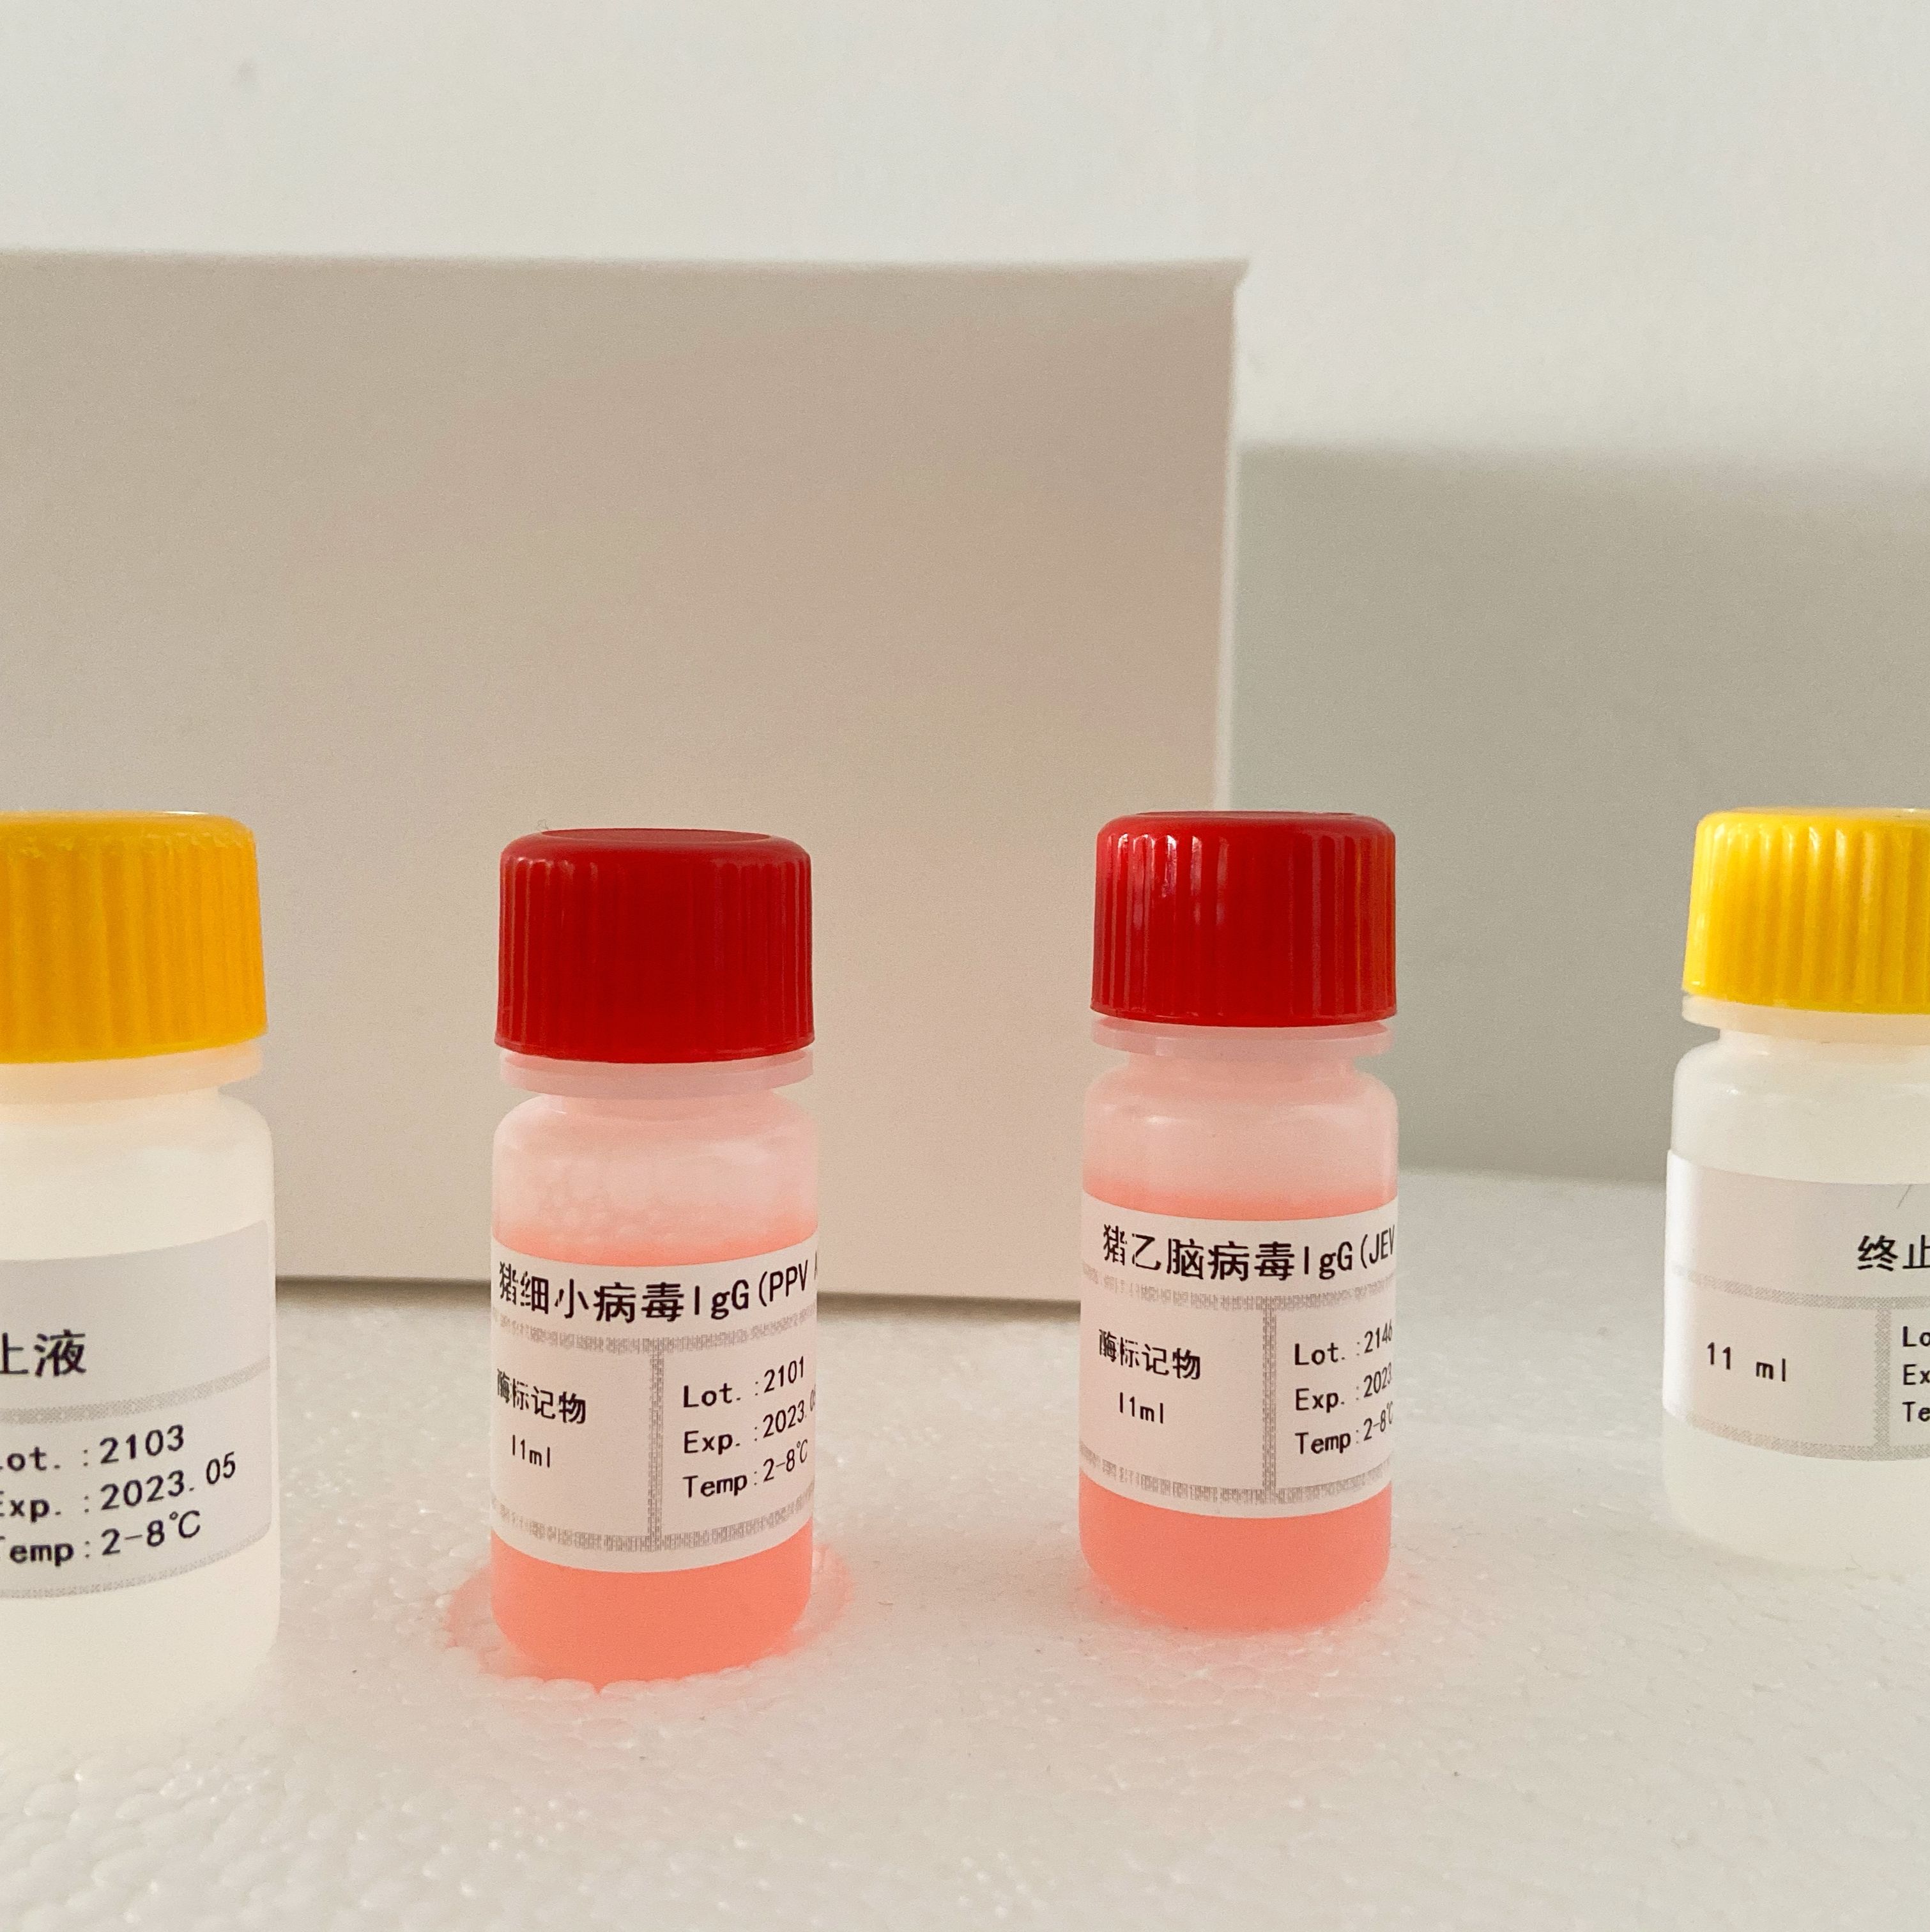 人细胞周期素D3(Cyclin-D3)ELISA试剂盒